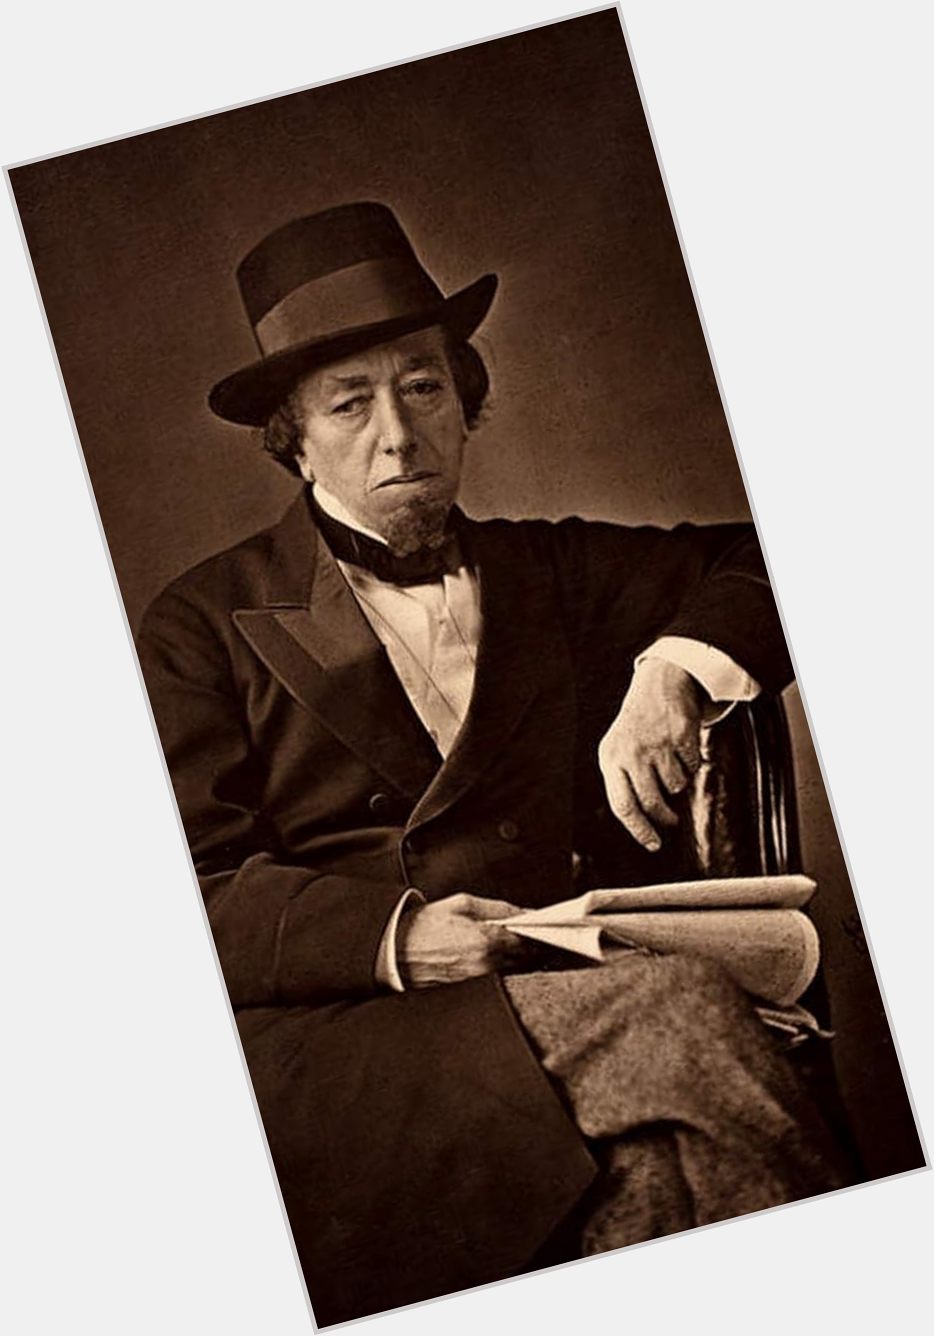 <a href="/hot-men/benjamin-disraeli/where-dating-news-photos">Benjamin Disraeli</a>  